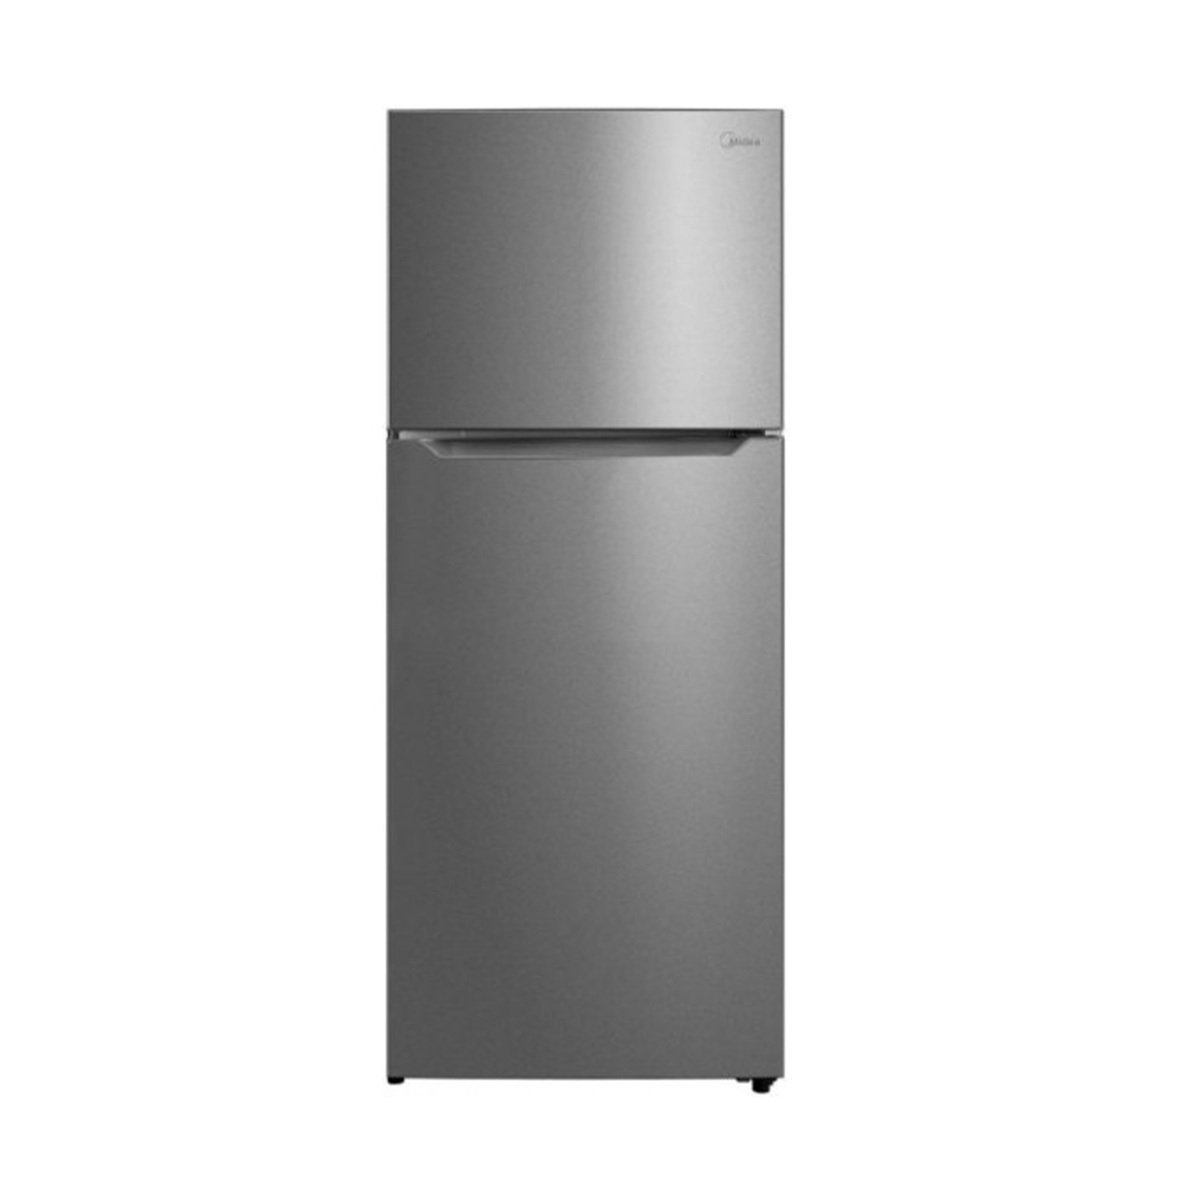 Buy Midea Double Door Refrigerator HD554FWEN 396LTR Online at Best Price | Dbl.Door Refrigeratr | Lulu KSA in Saudi Arabia